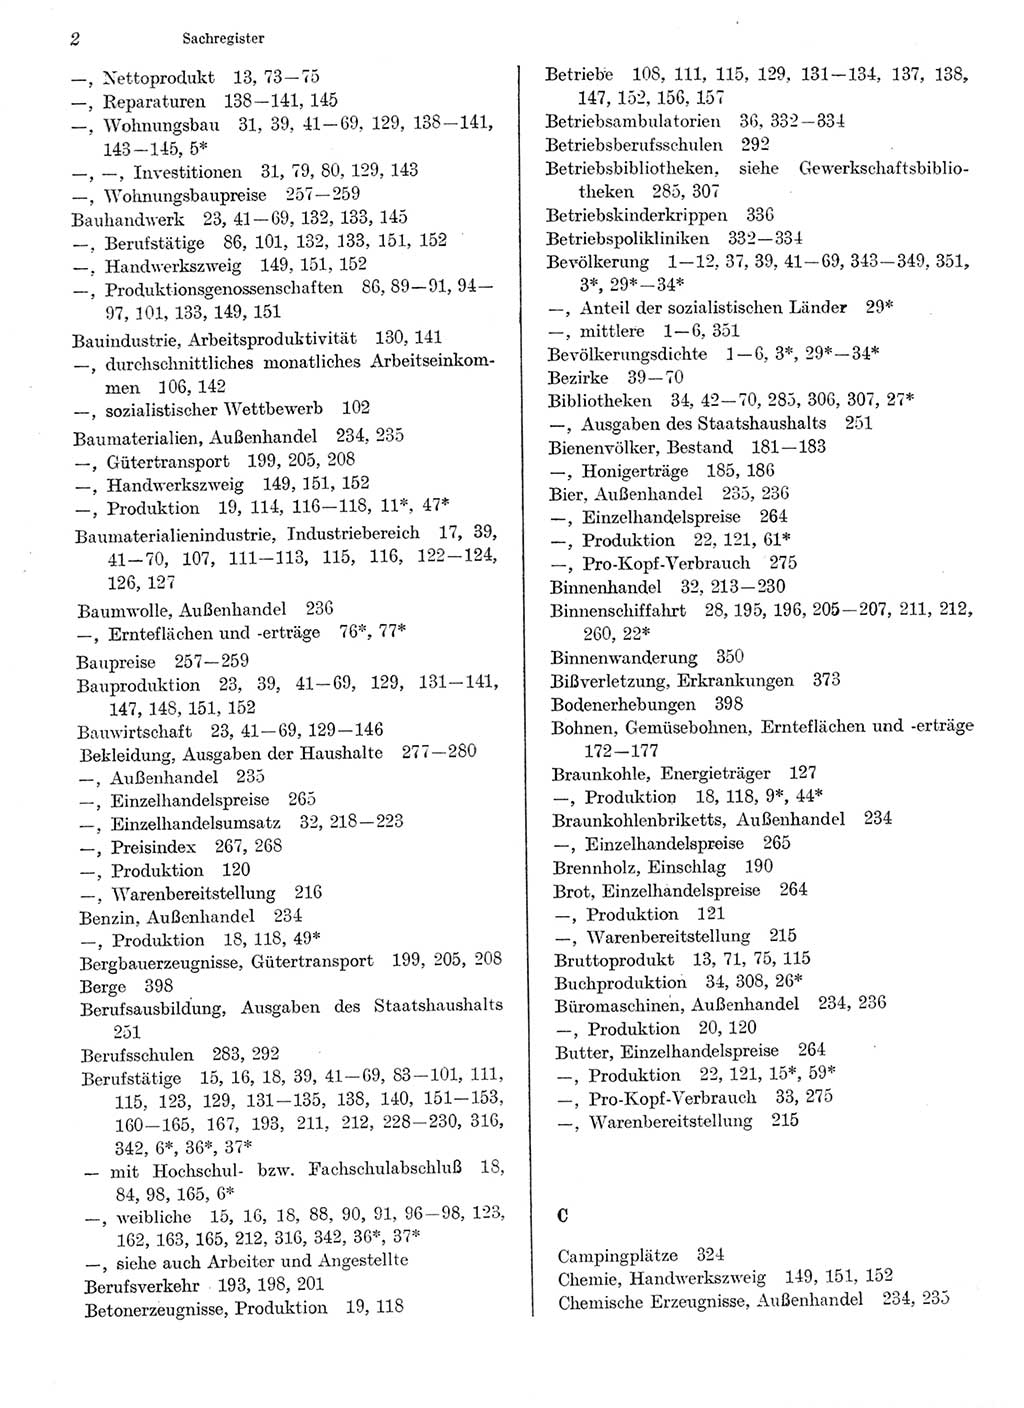 Statistisches Jahrbuch der Deutschen Demokratischen Republik (DDR) 1979, Seite 2 (Stat. Jb. DDR 1979, S. 2)